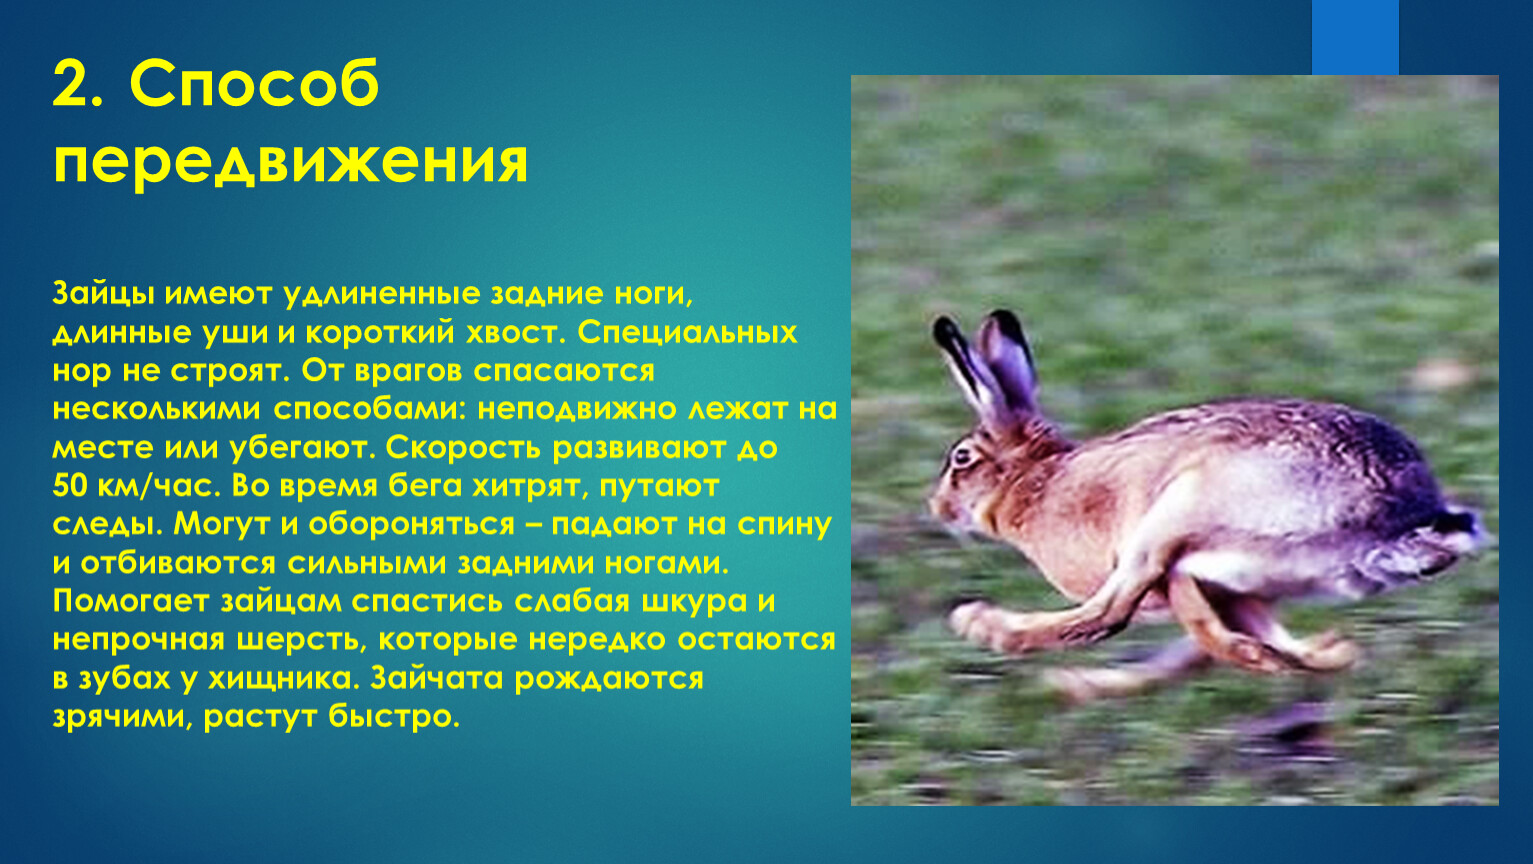 У зайца хвост короткий а уши. Способ передвижения зайца. Способ передвижения зайцеобразных. Способ перемещения зайца. Скорость передвижения зайца.